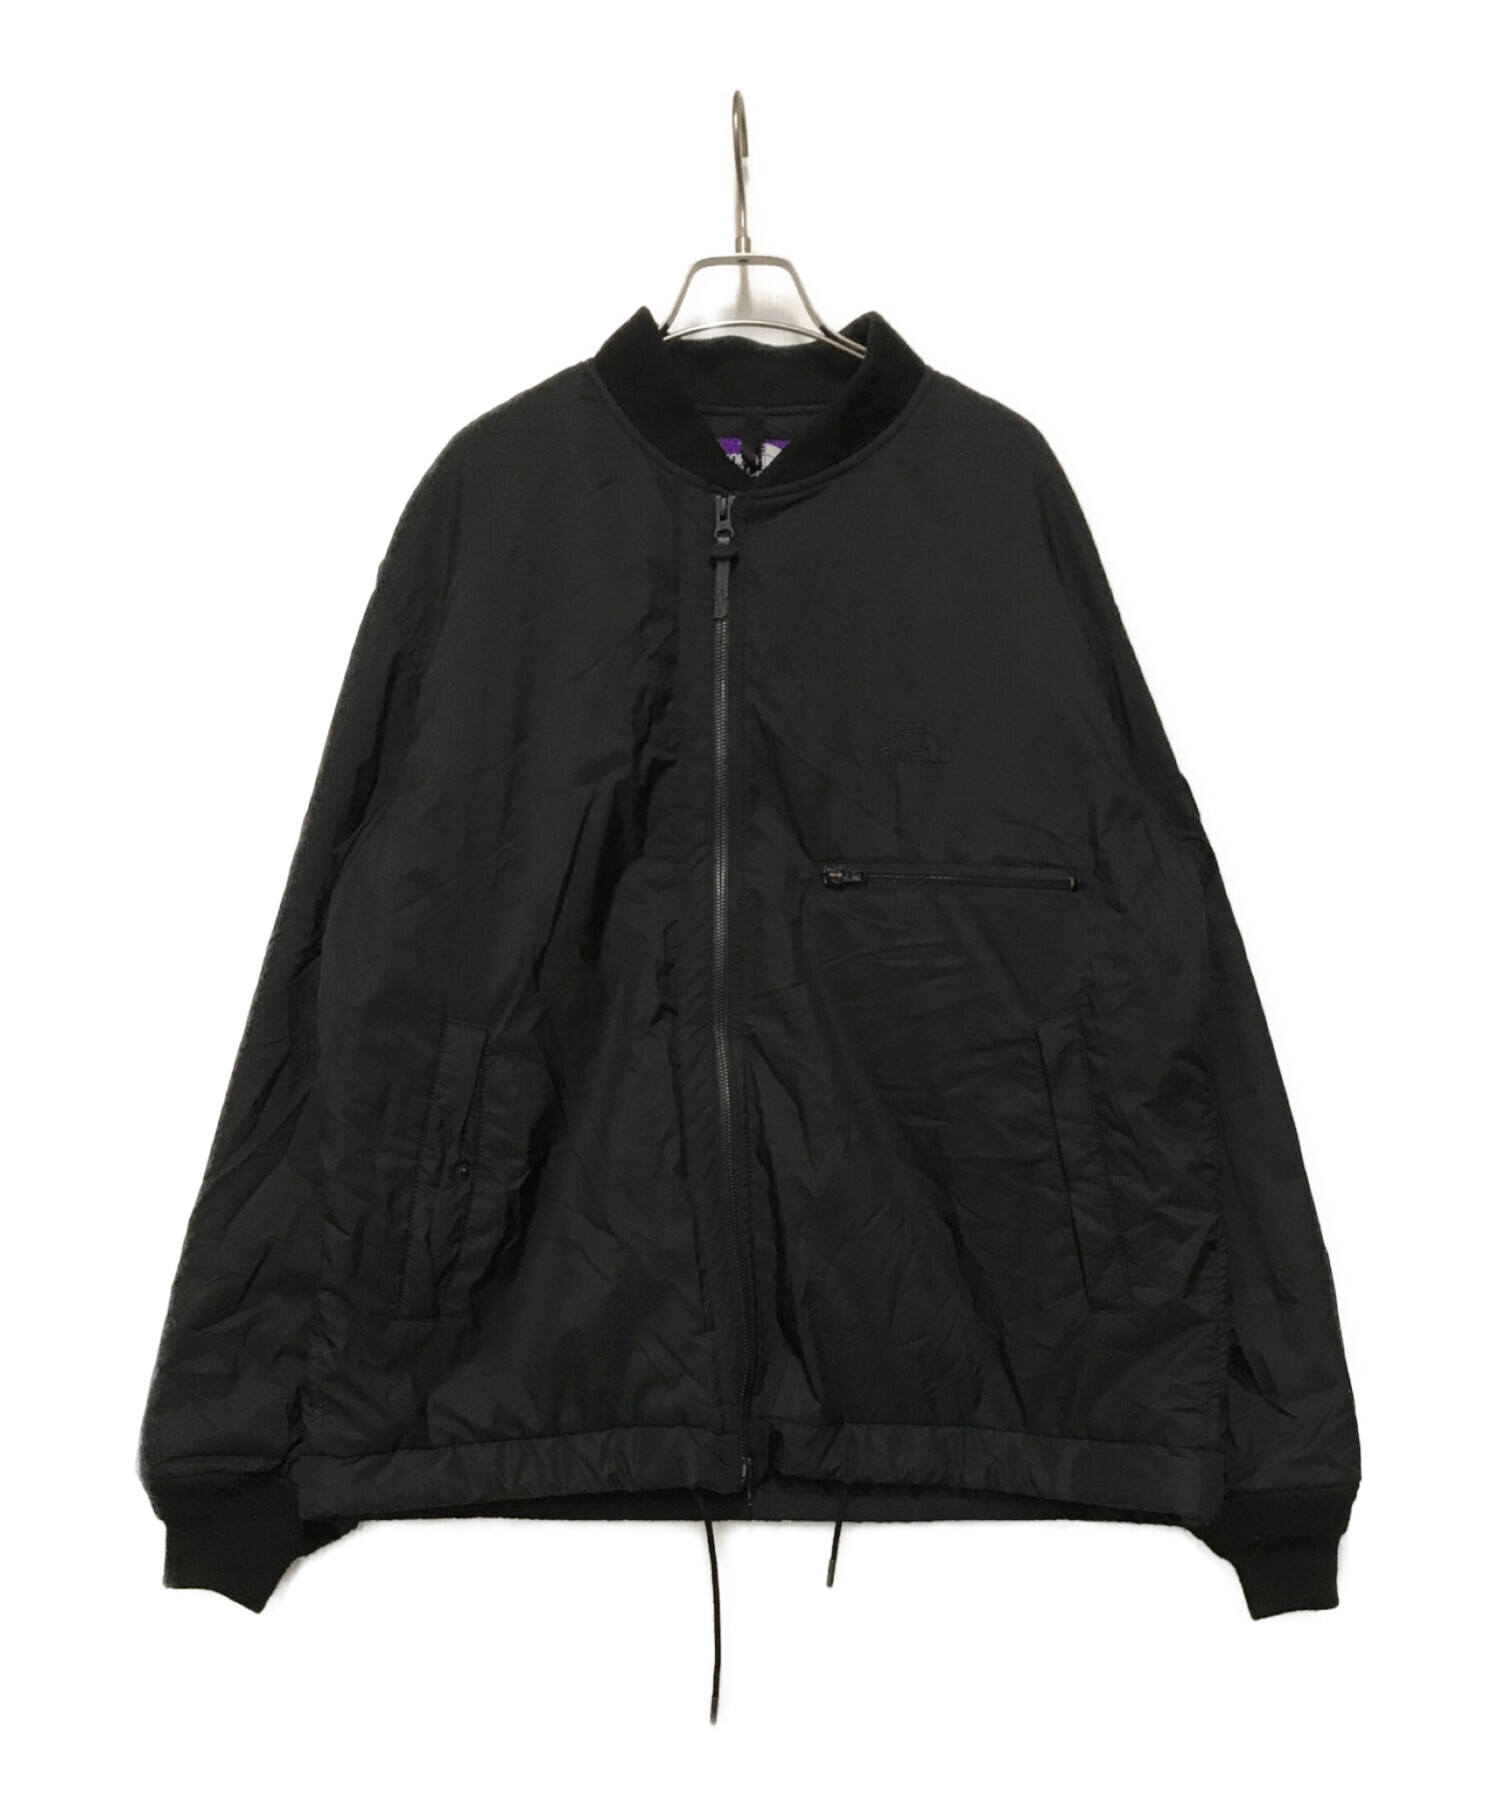 THE NORTHFACE PURPLELABEL (ザ・ノースフェイス パープルレーベル) Insulated Field Jacket ブラック  サイズ:XL